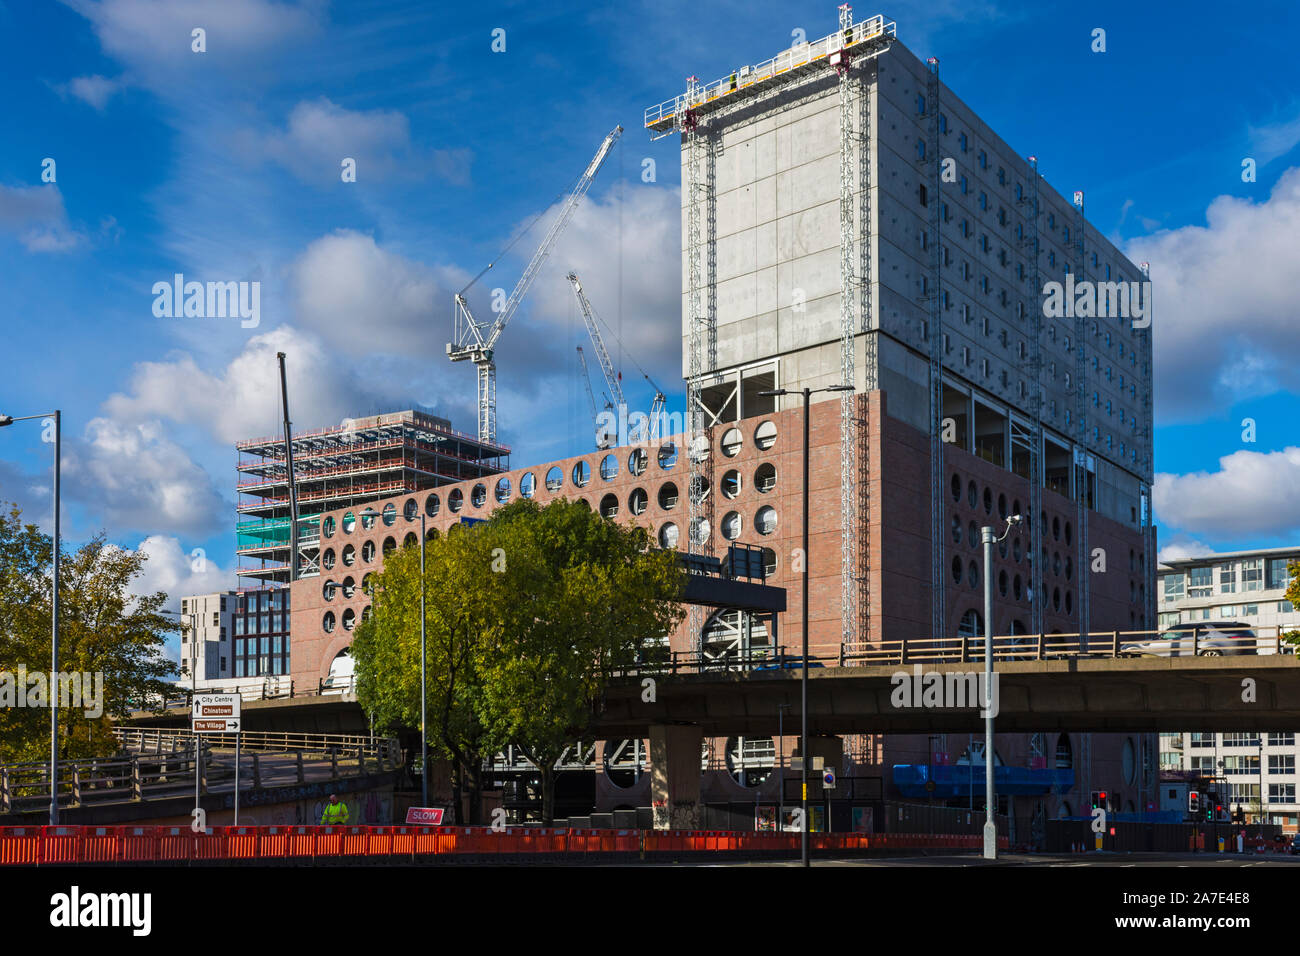 El círculo cuadrado hotel aparcamiento y el edificio en construcción, Oct 2019, Manchester, Inglaterra, Reino Unido. Foto de stock